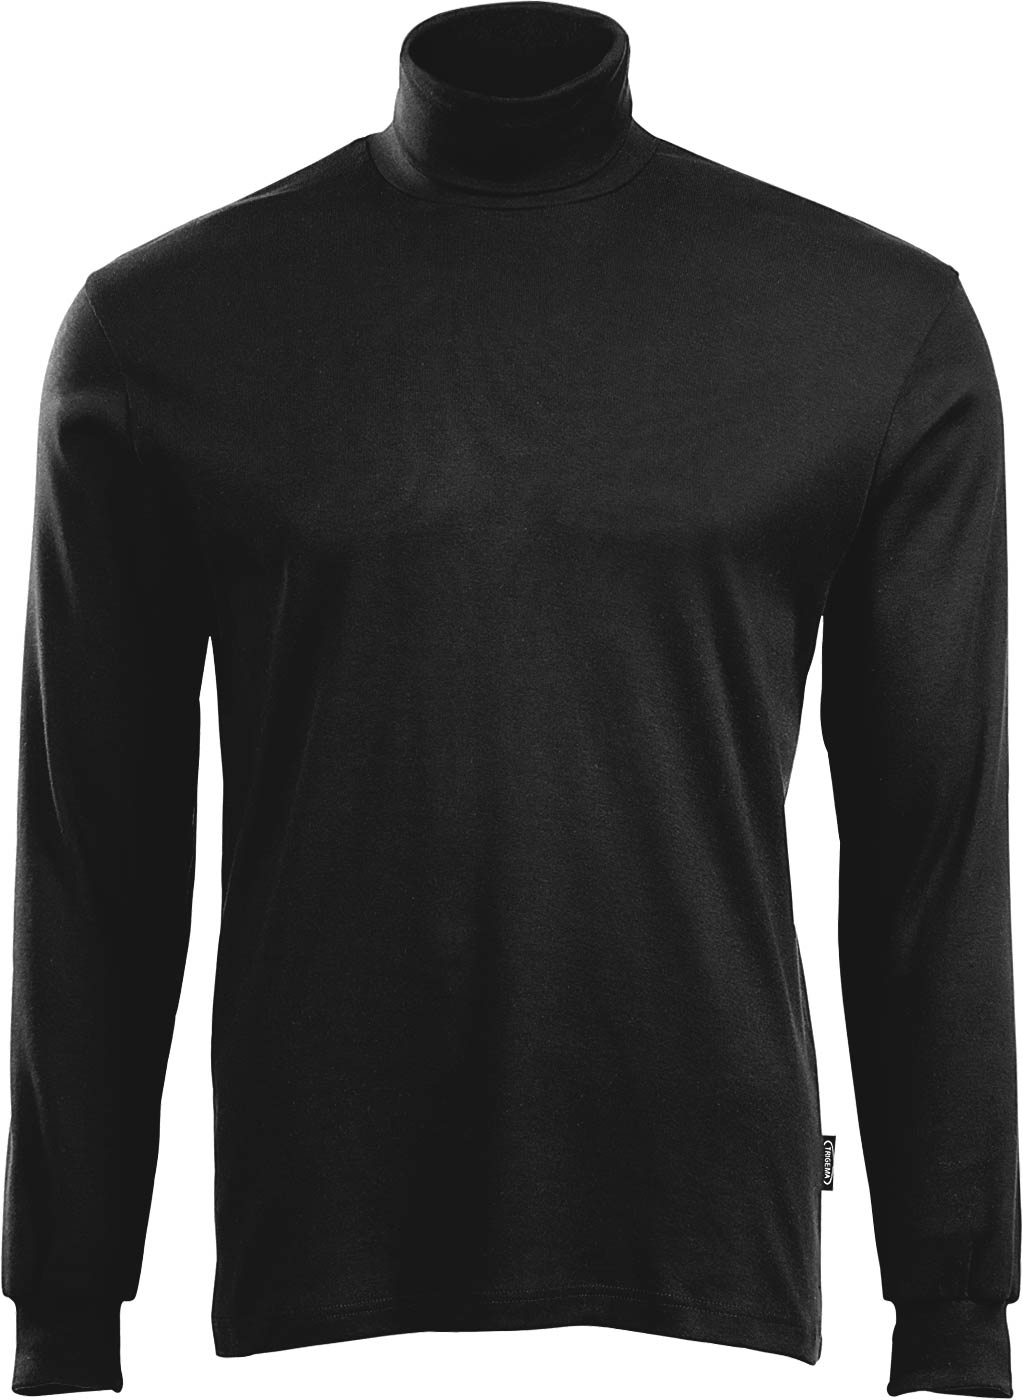 100% in Rollkragen schwarz Baumwolle - Trigema Langarm-Shirt